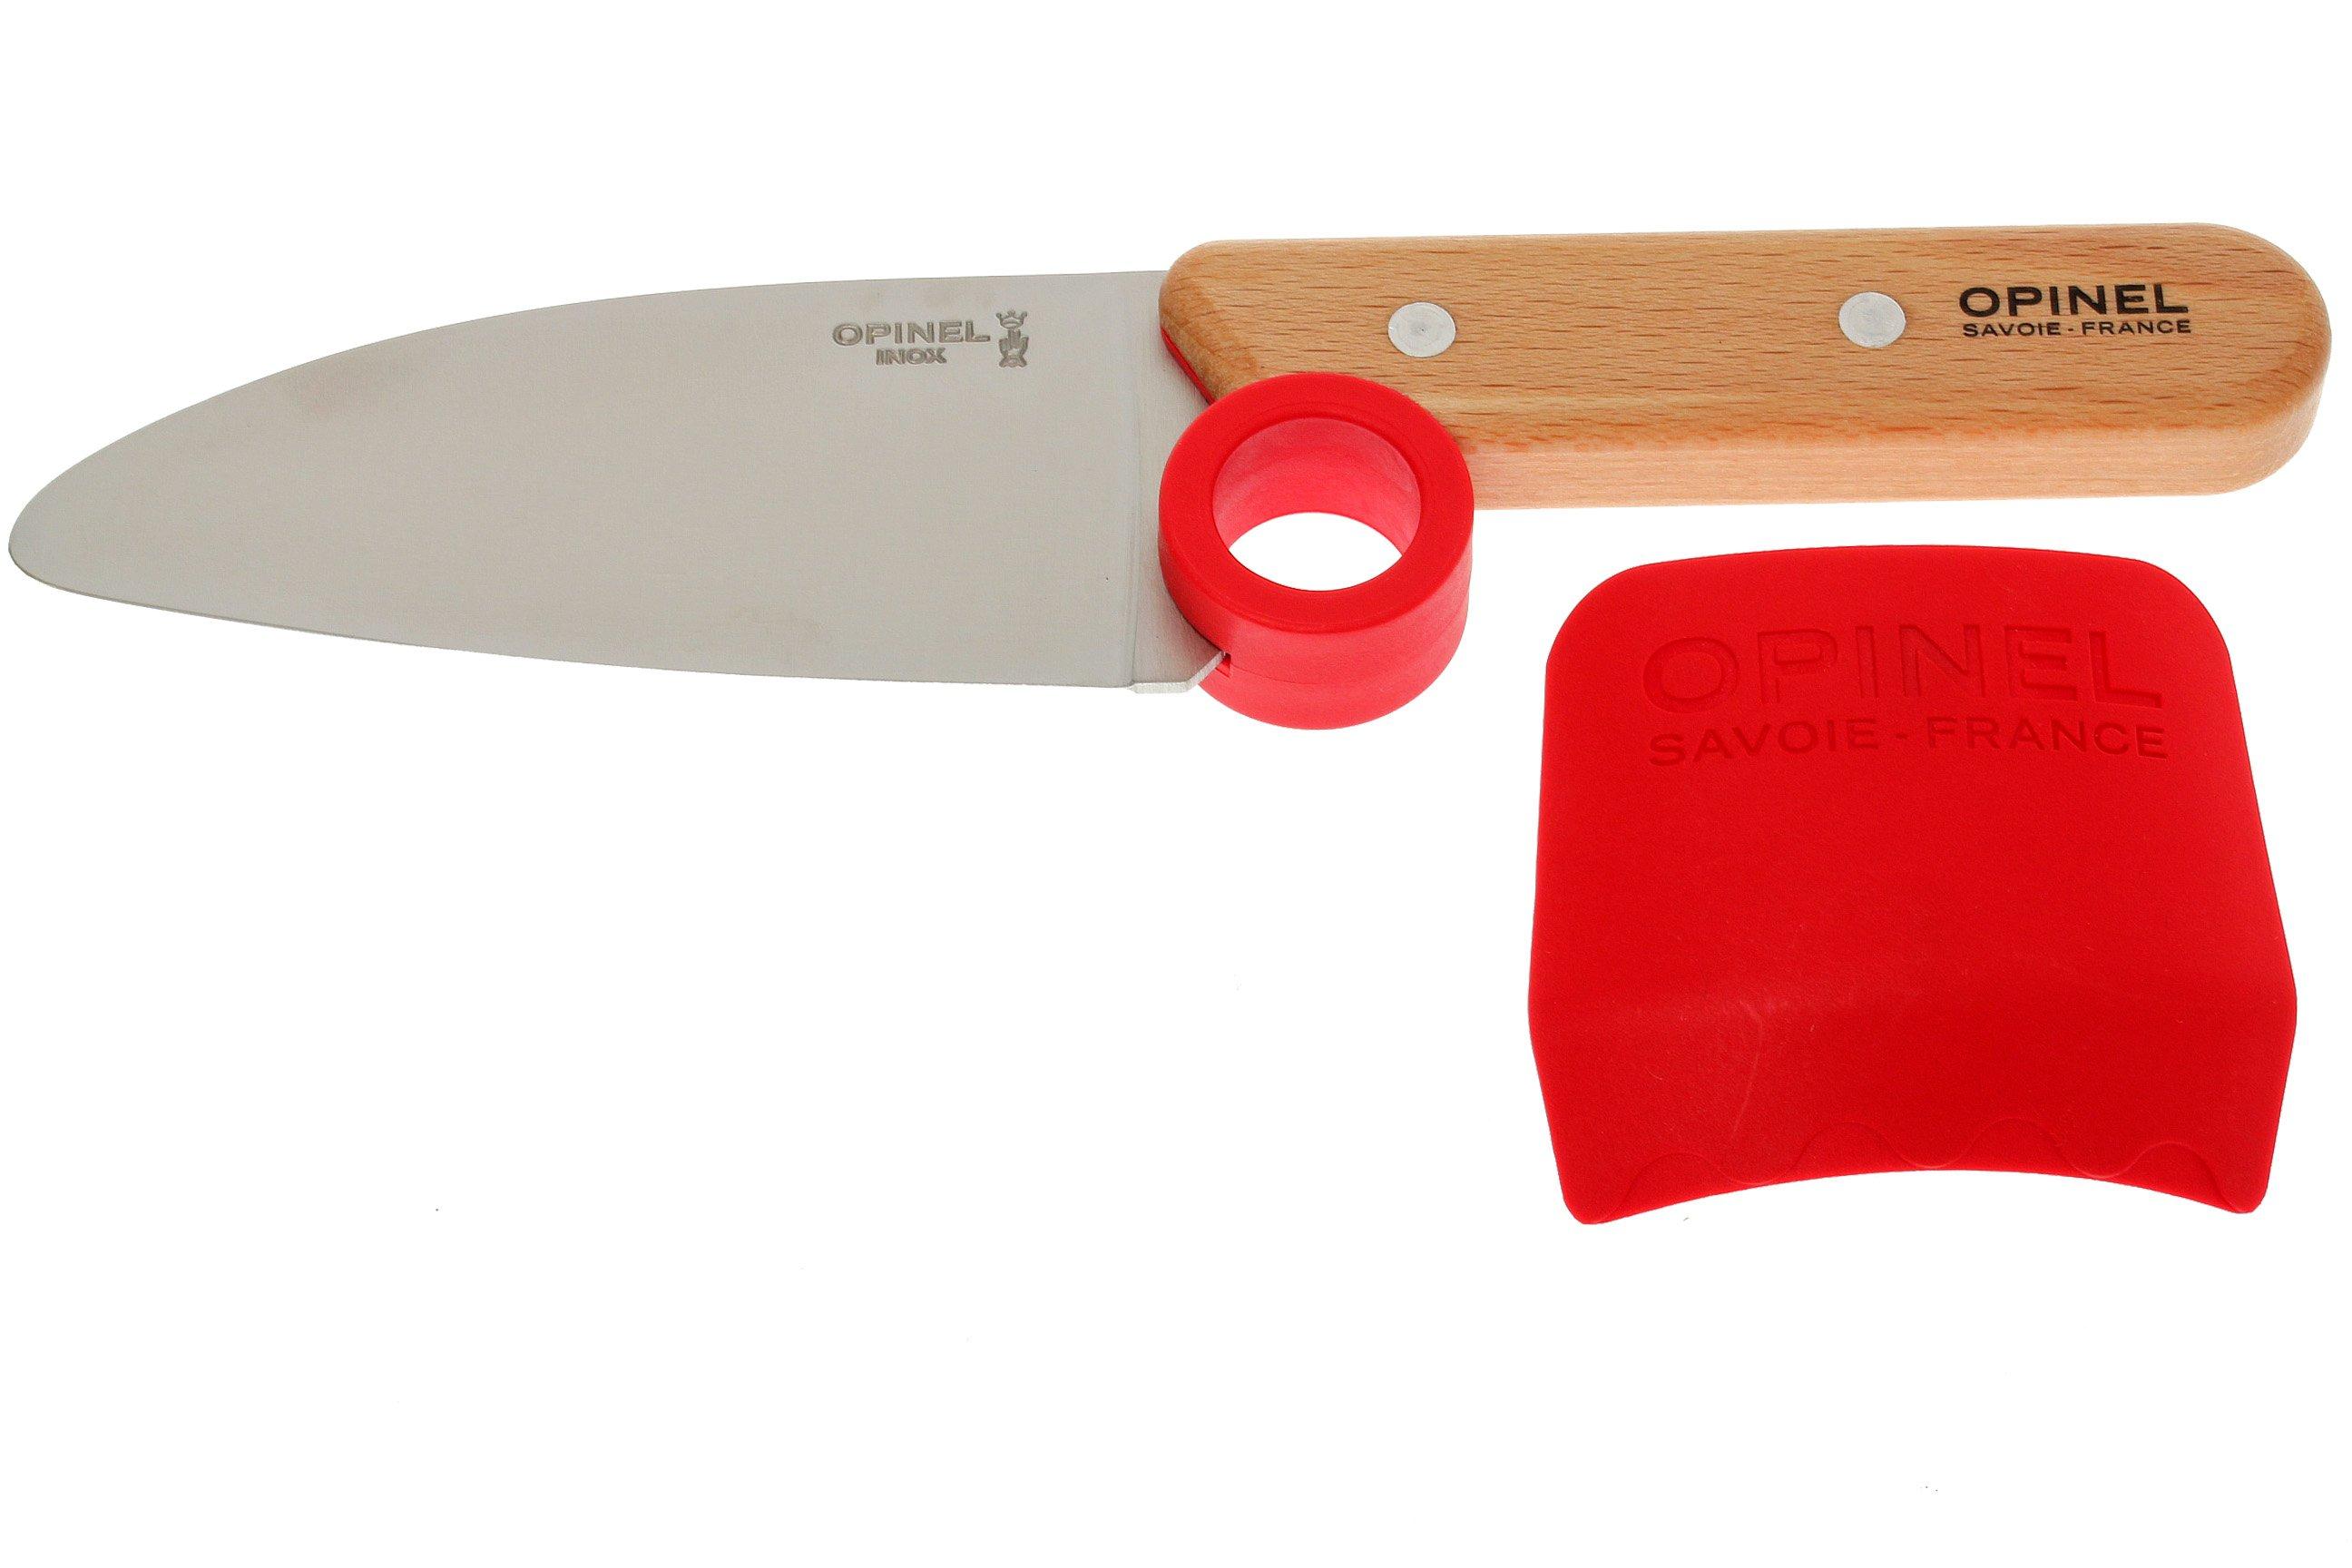 ZLXFT Couteau Enfant,4 Pièces Couteau de Cuisine pour Enfants